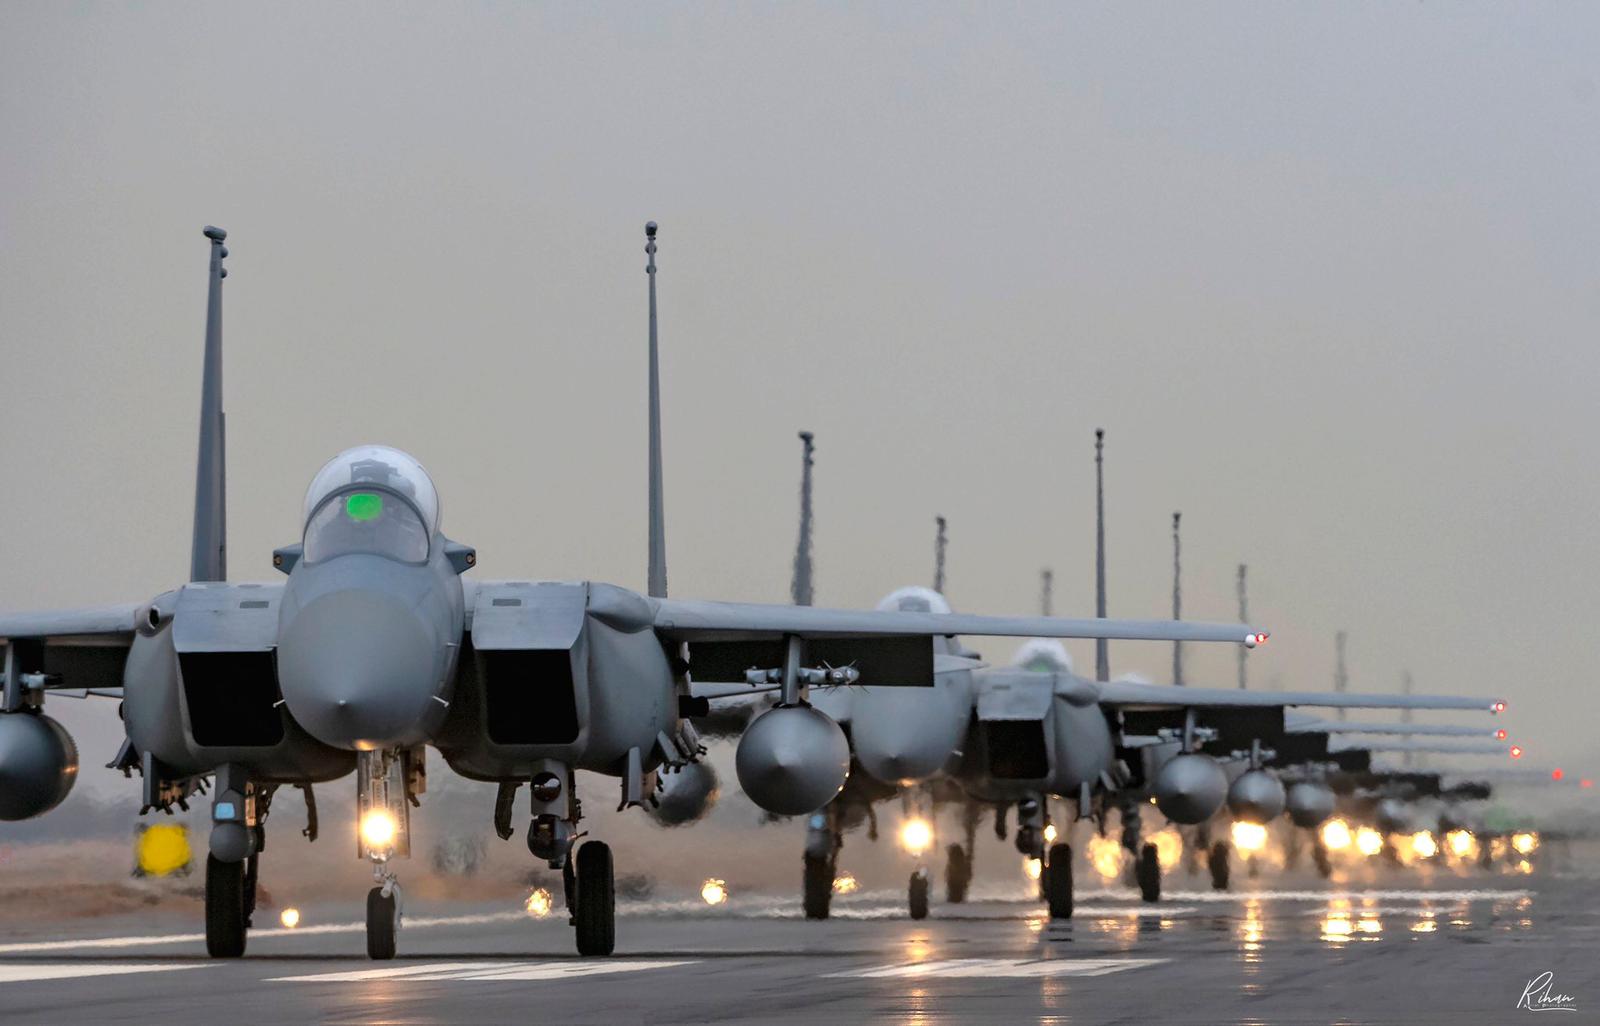 Royal Saudi Air Force F-15SA advanced fighter aircraft